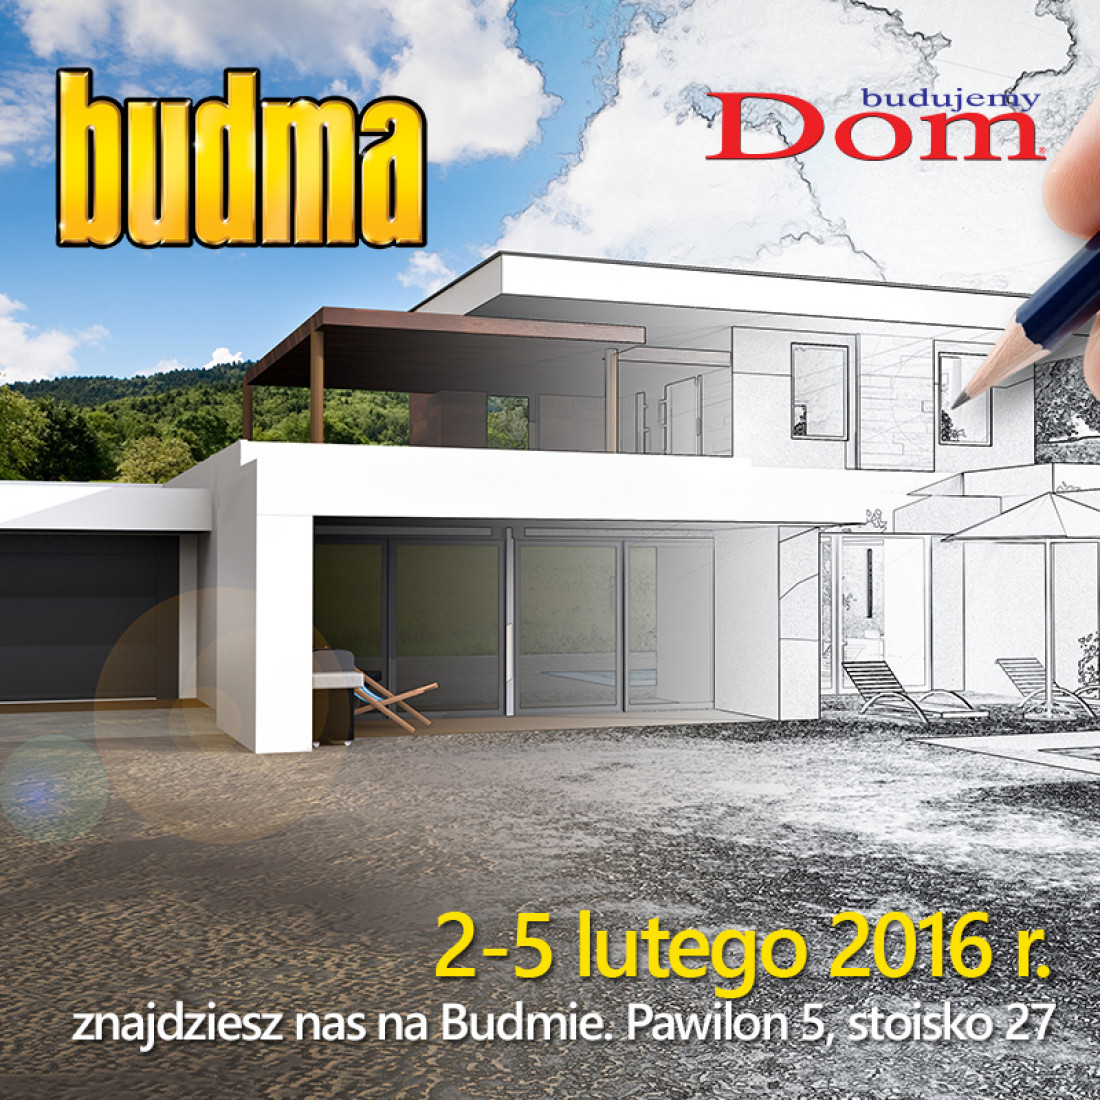 Budujemy Dom na targach Budma 2016